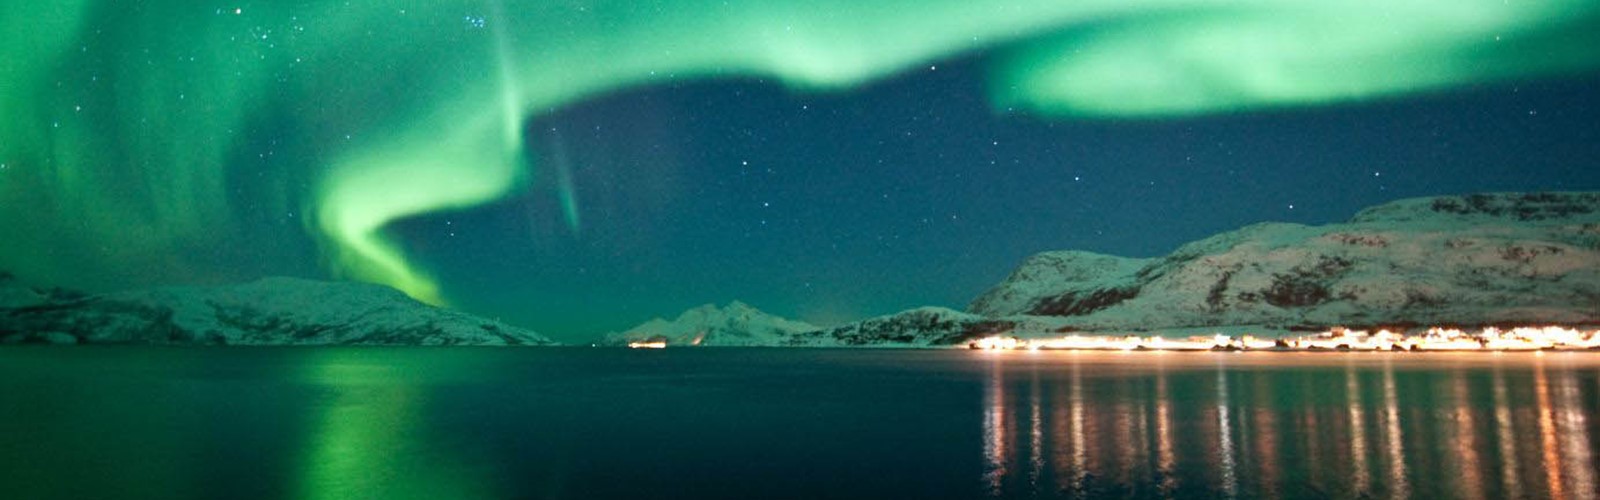 Northen_Lights_Aurora_borealis_Nordlys_Nordlich_in_Norway.jpg